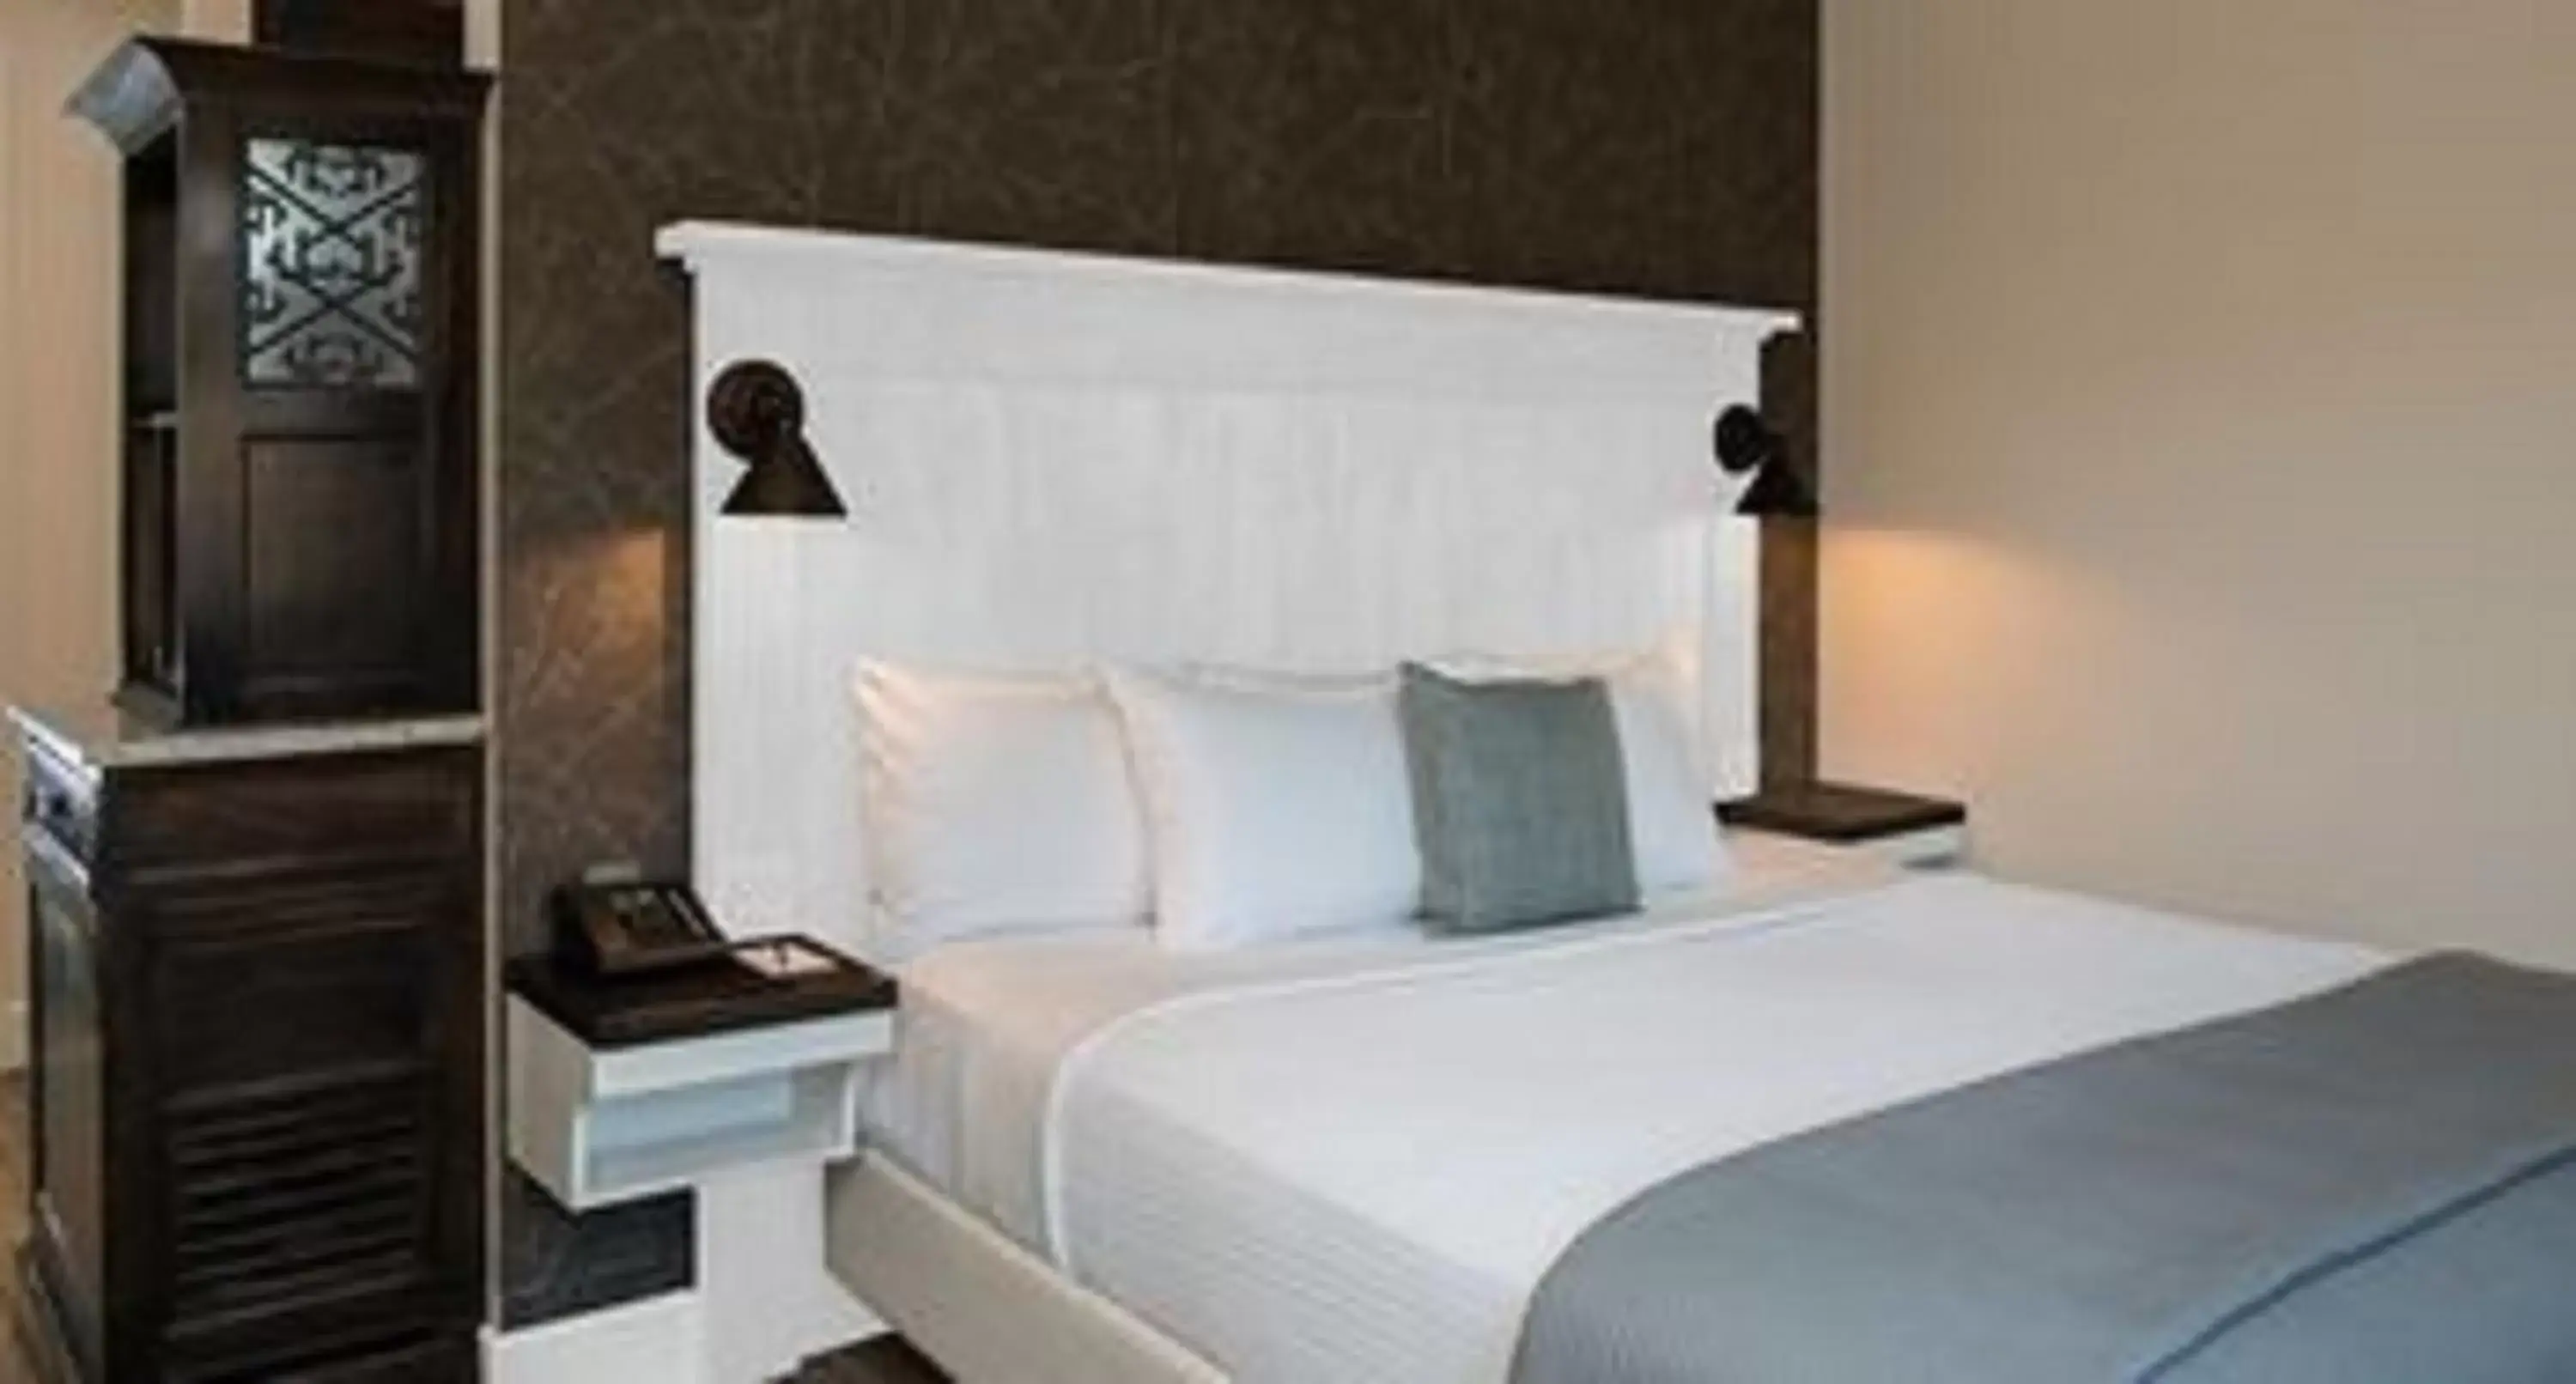 Bed in Village Hotel on Biltmore Estate